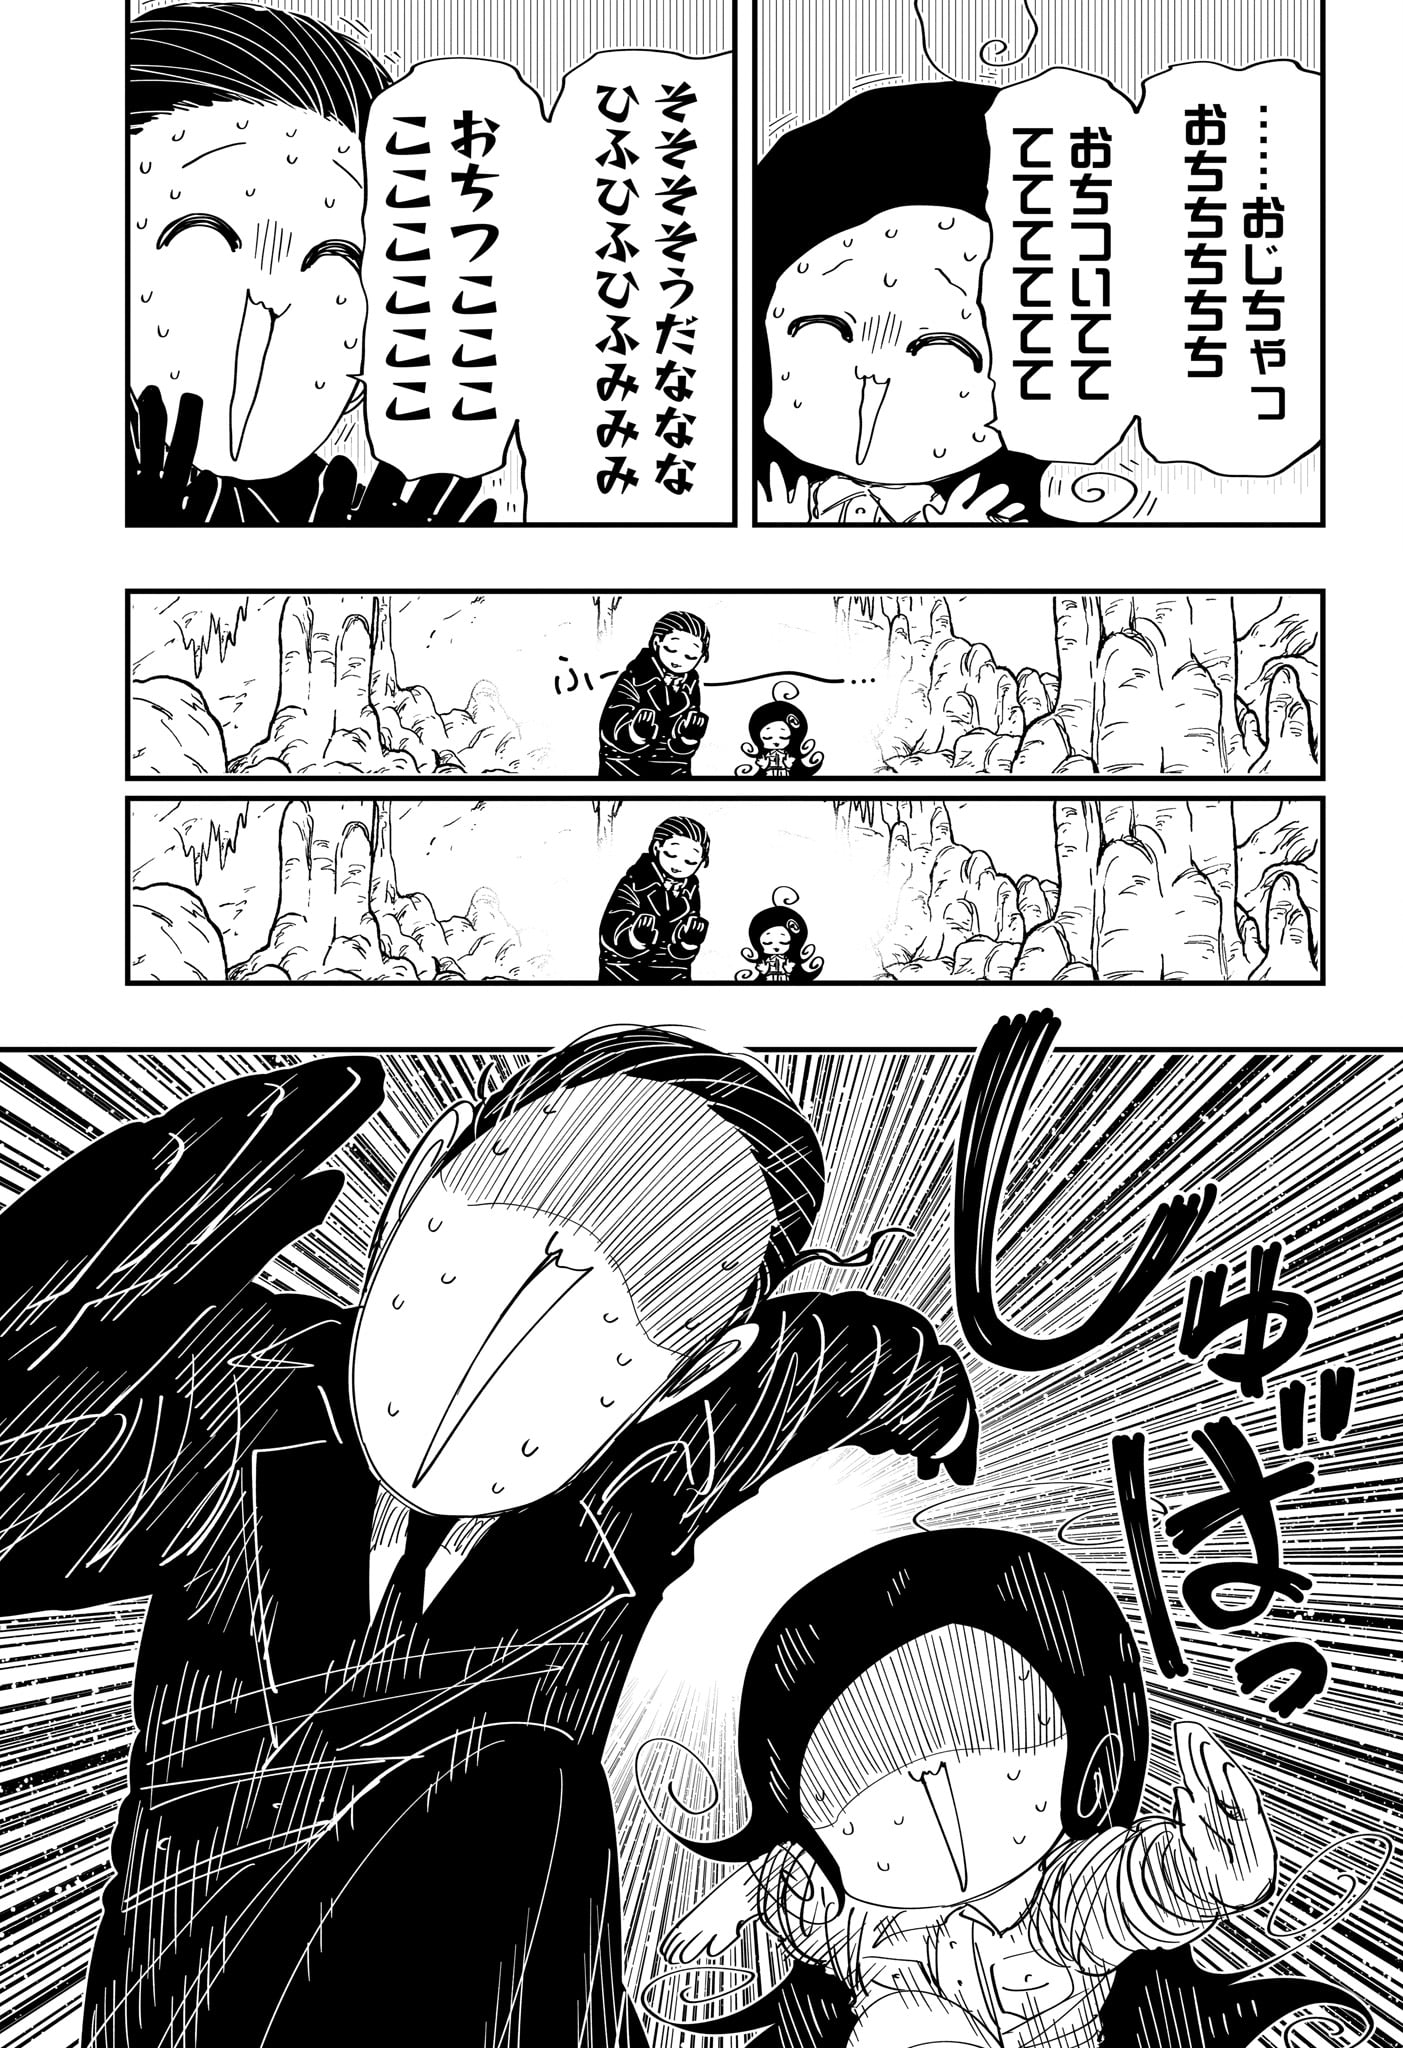 Yozakura-san Chi no Daisakusen - Chapter 216 - Page 17